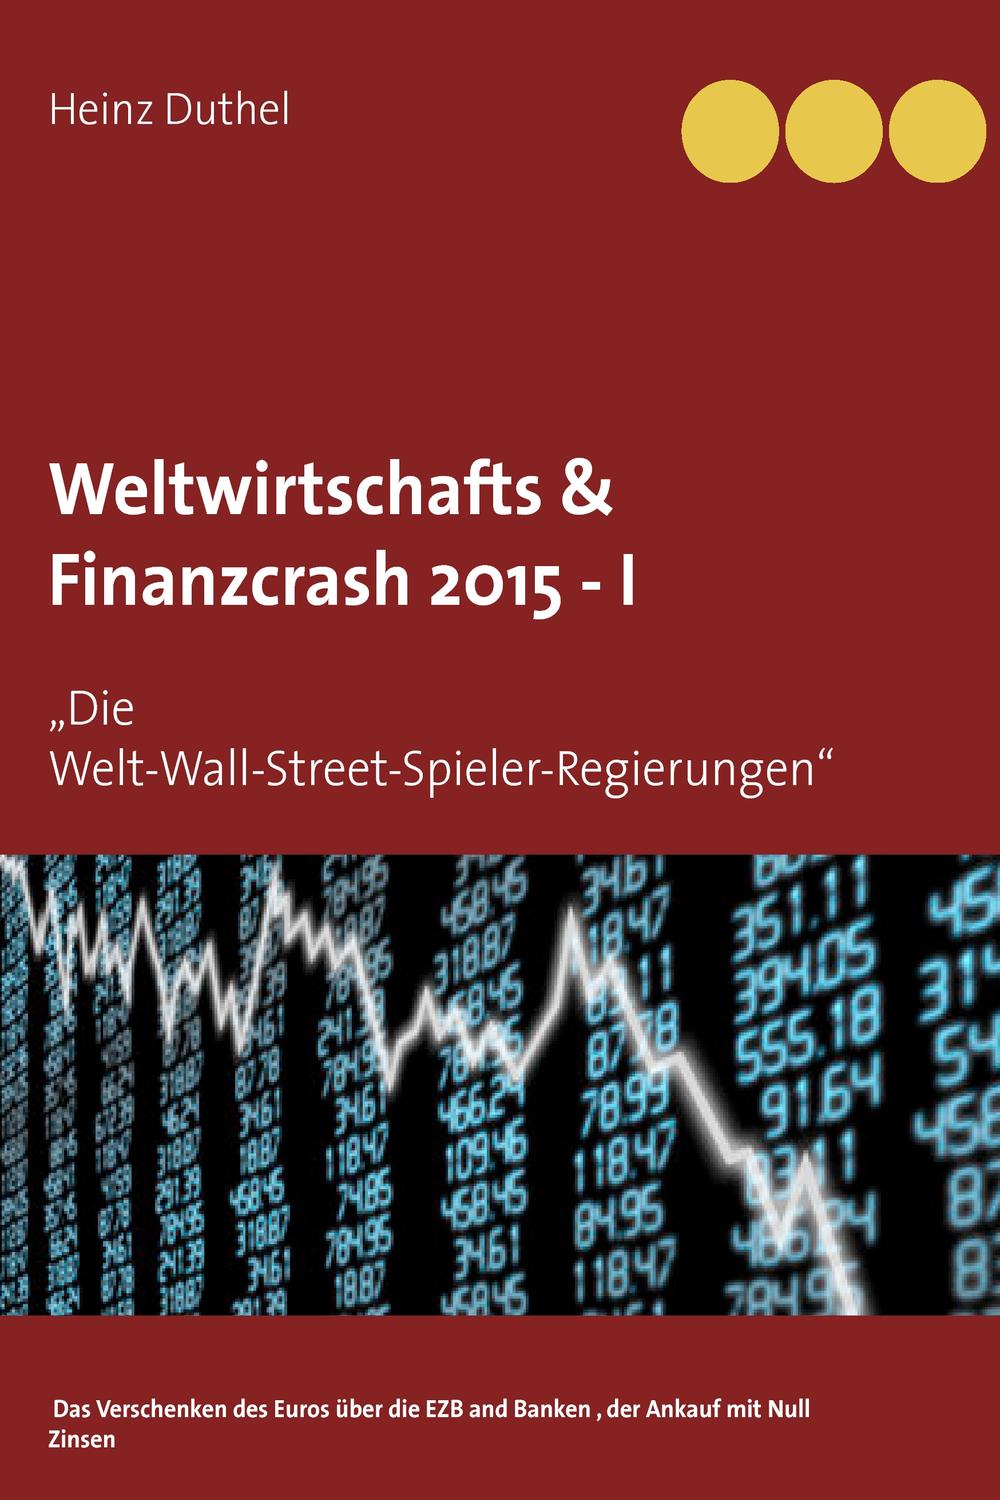 Weltwirtschafts & Finanzcrash 2015 -I - Heinz Duthel